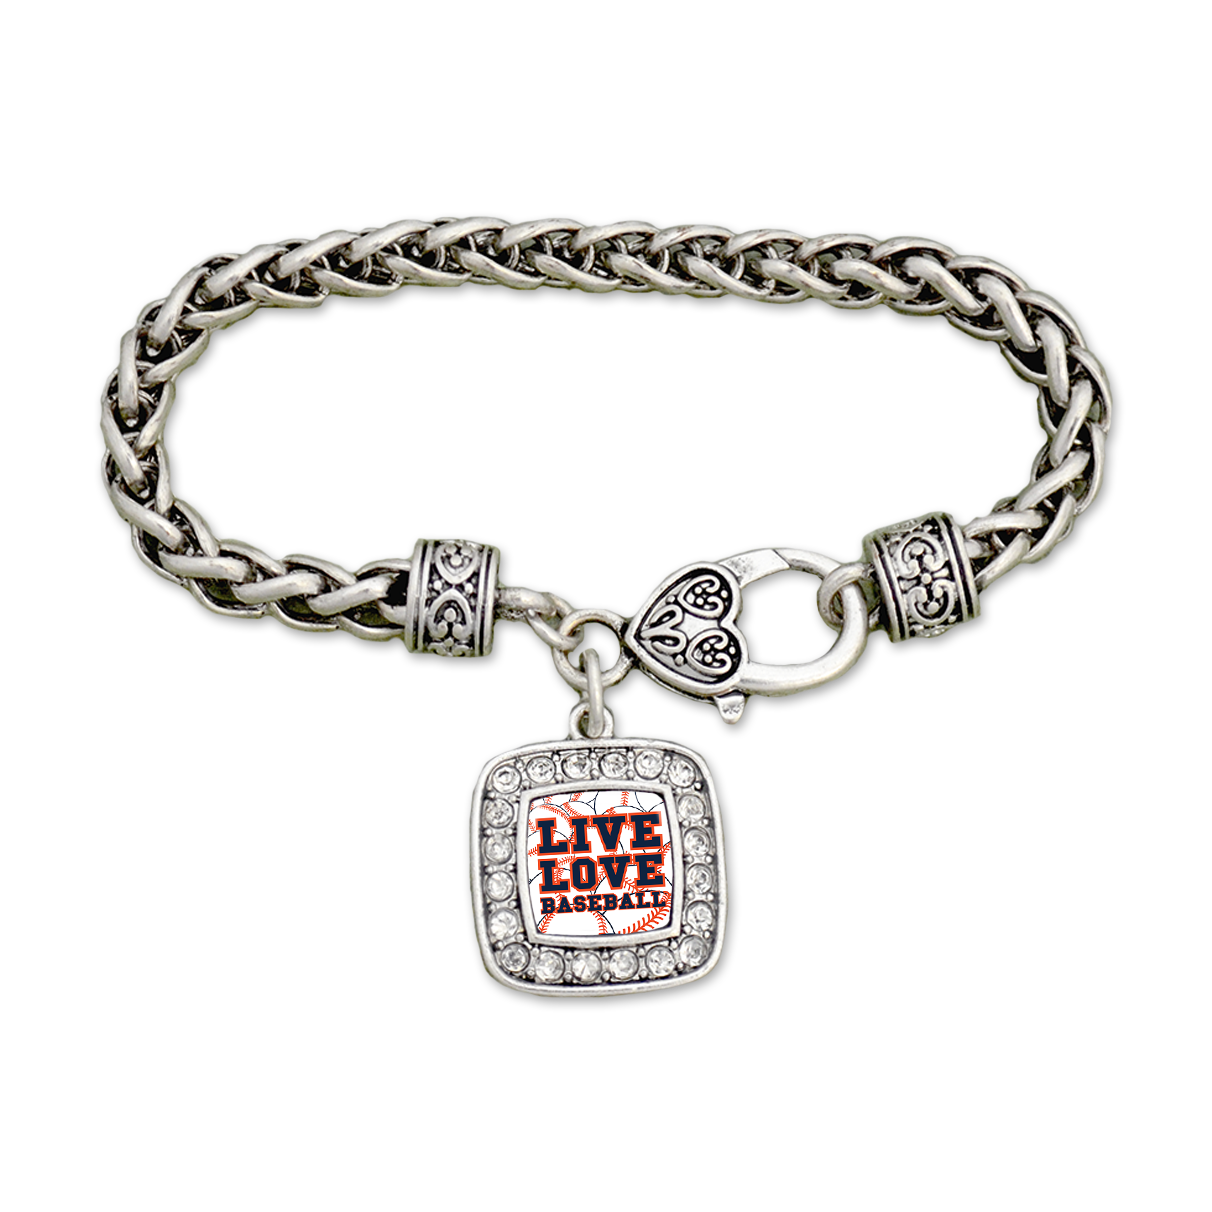 Detroit Live Love Baseball Clamp Bracelet